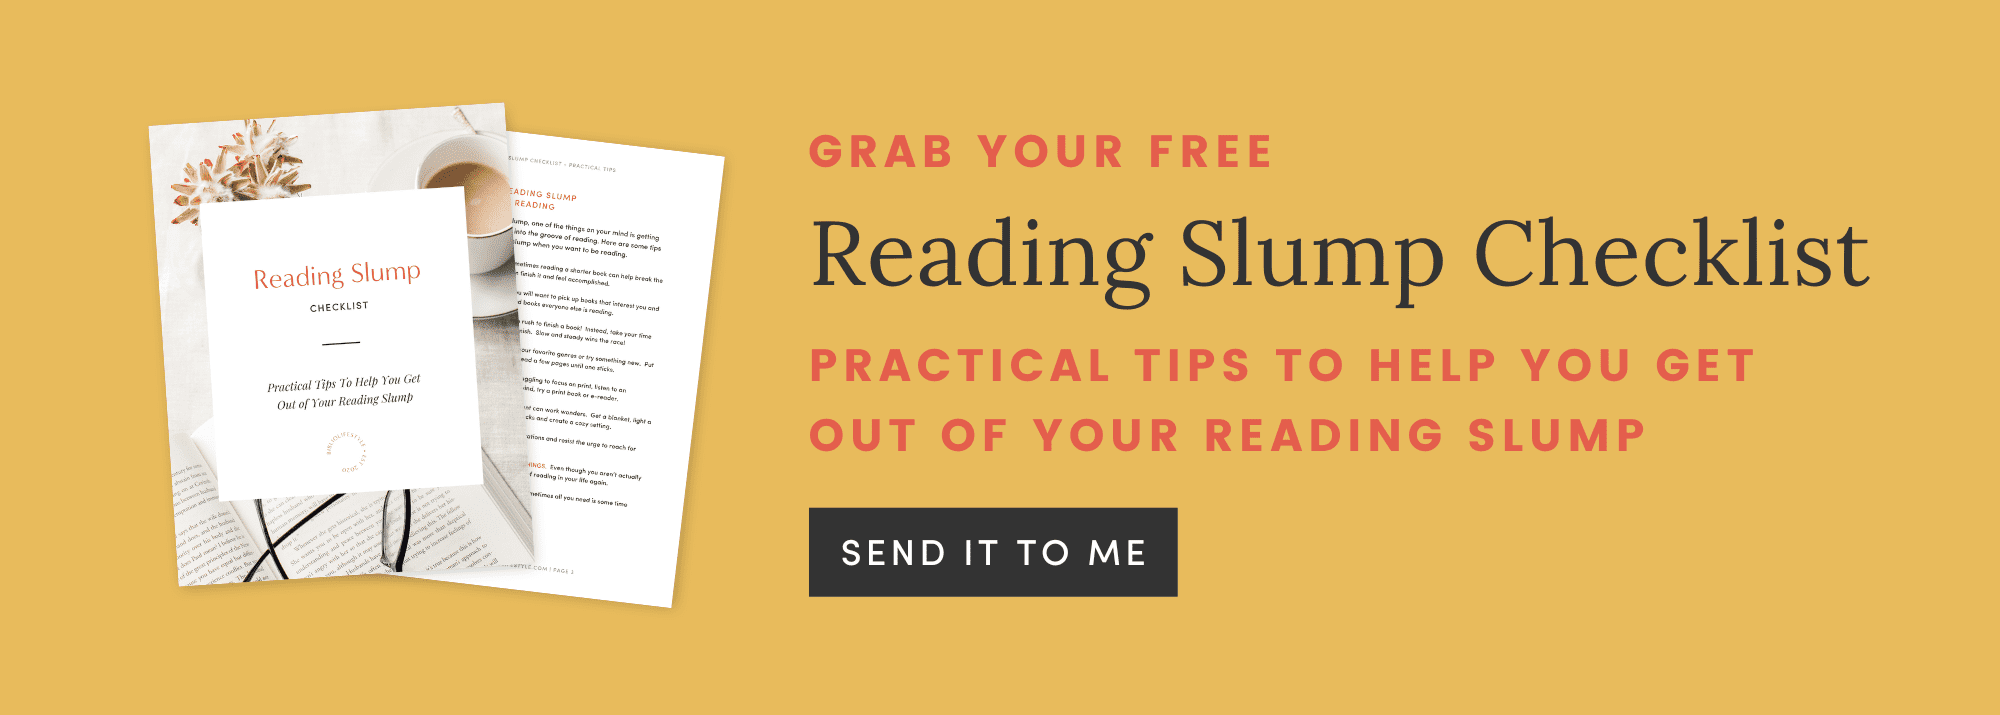 Reading Slump Checklist